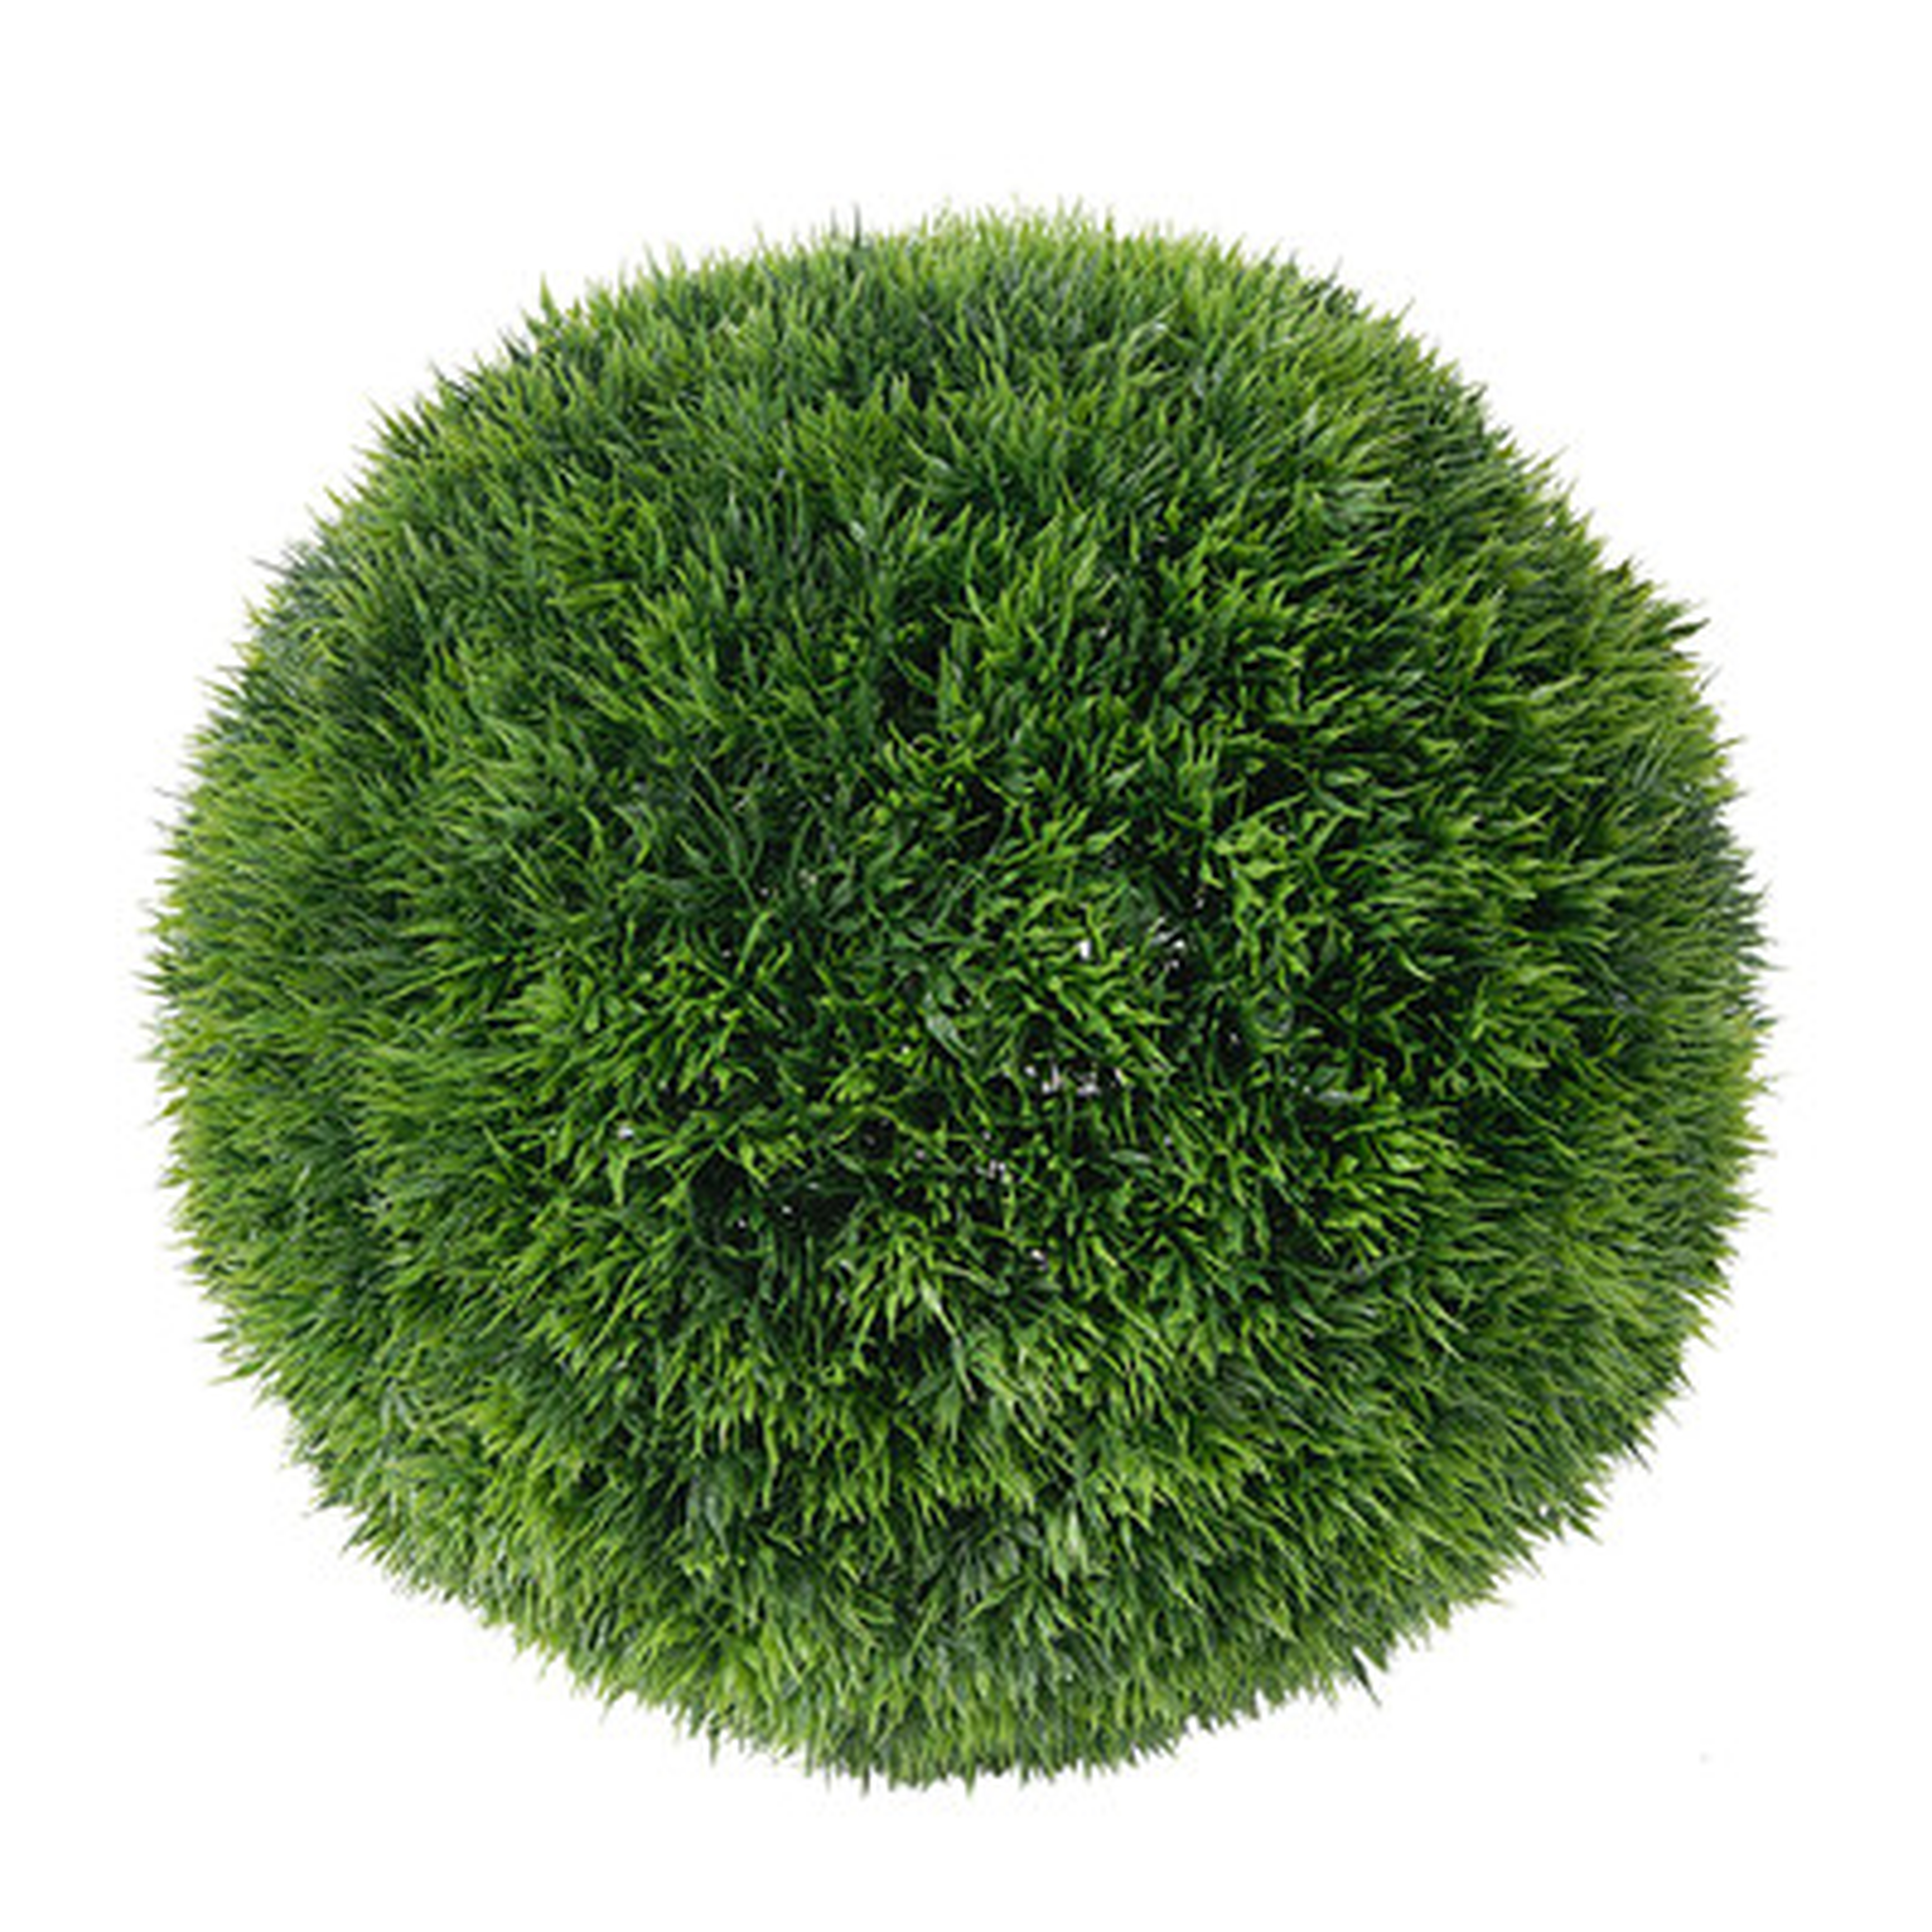 Faux Grass Ball - AllModern